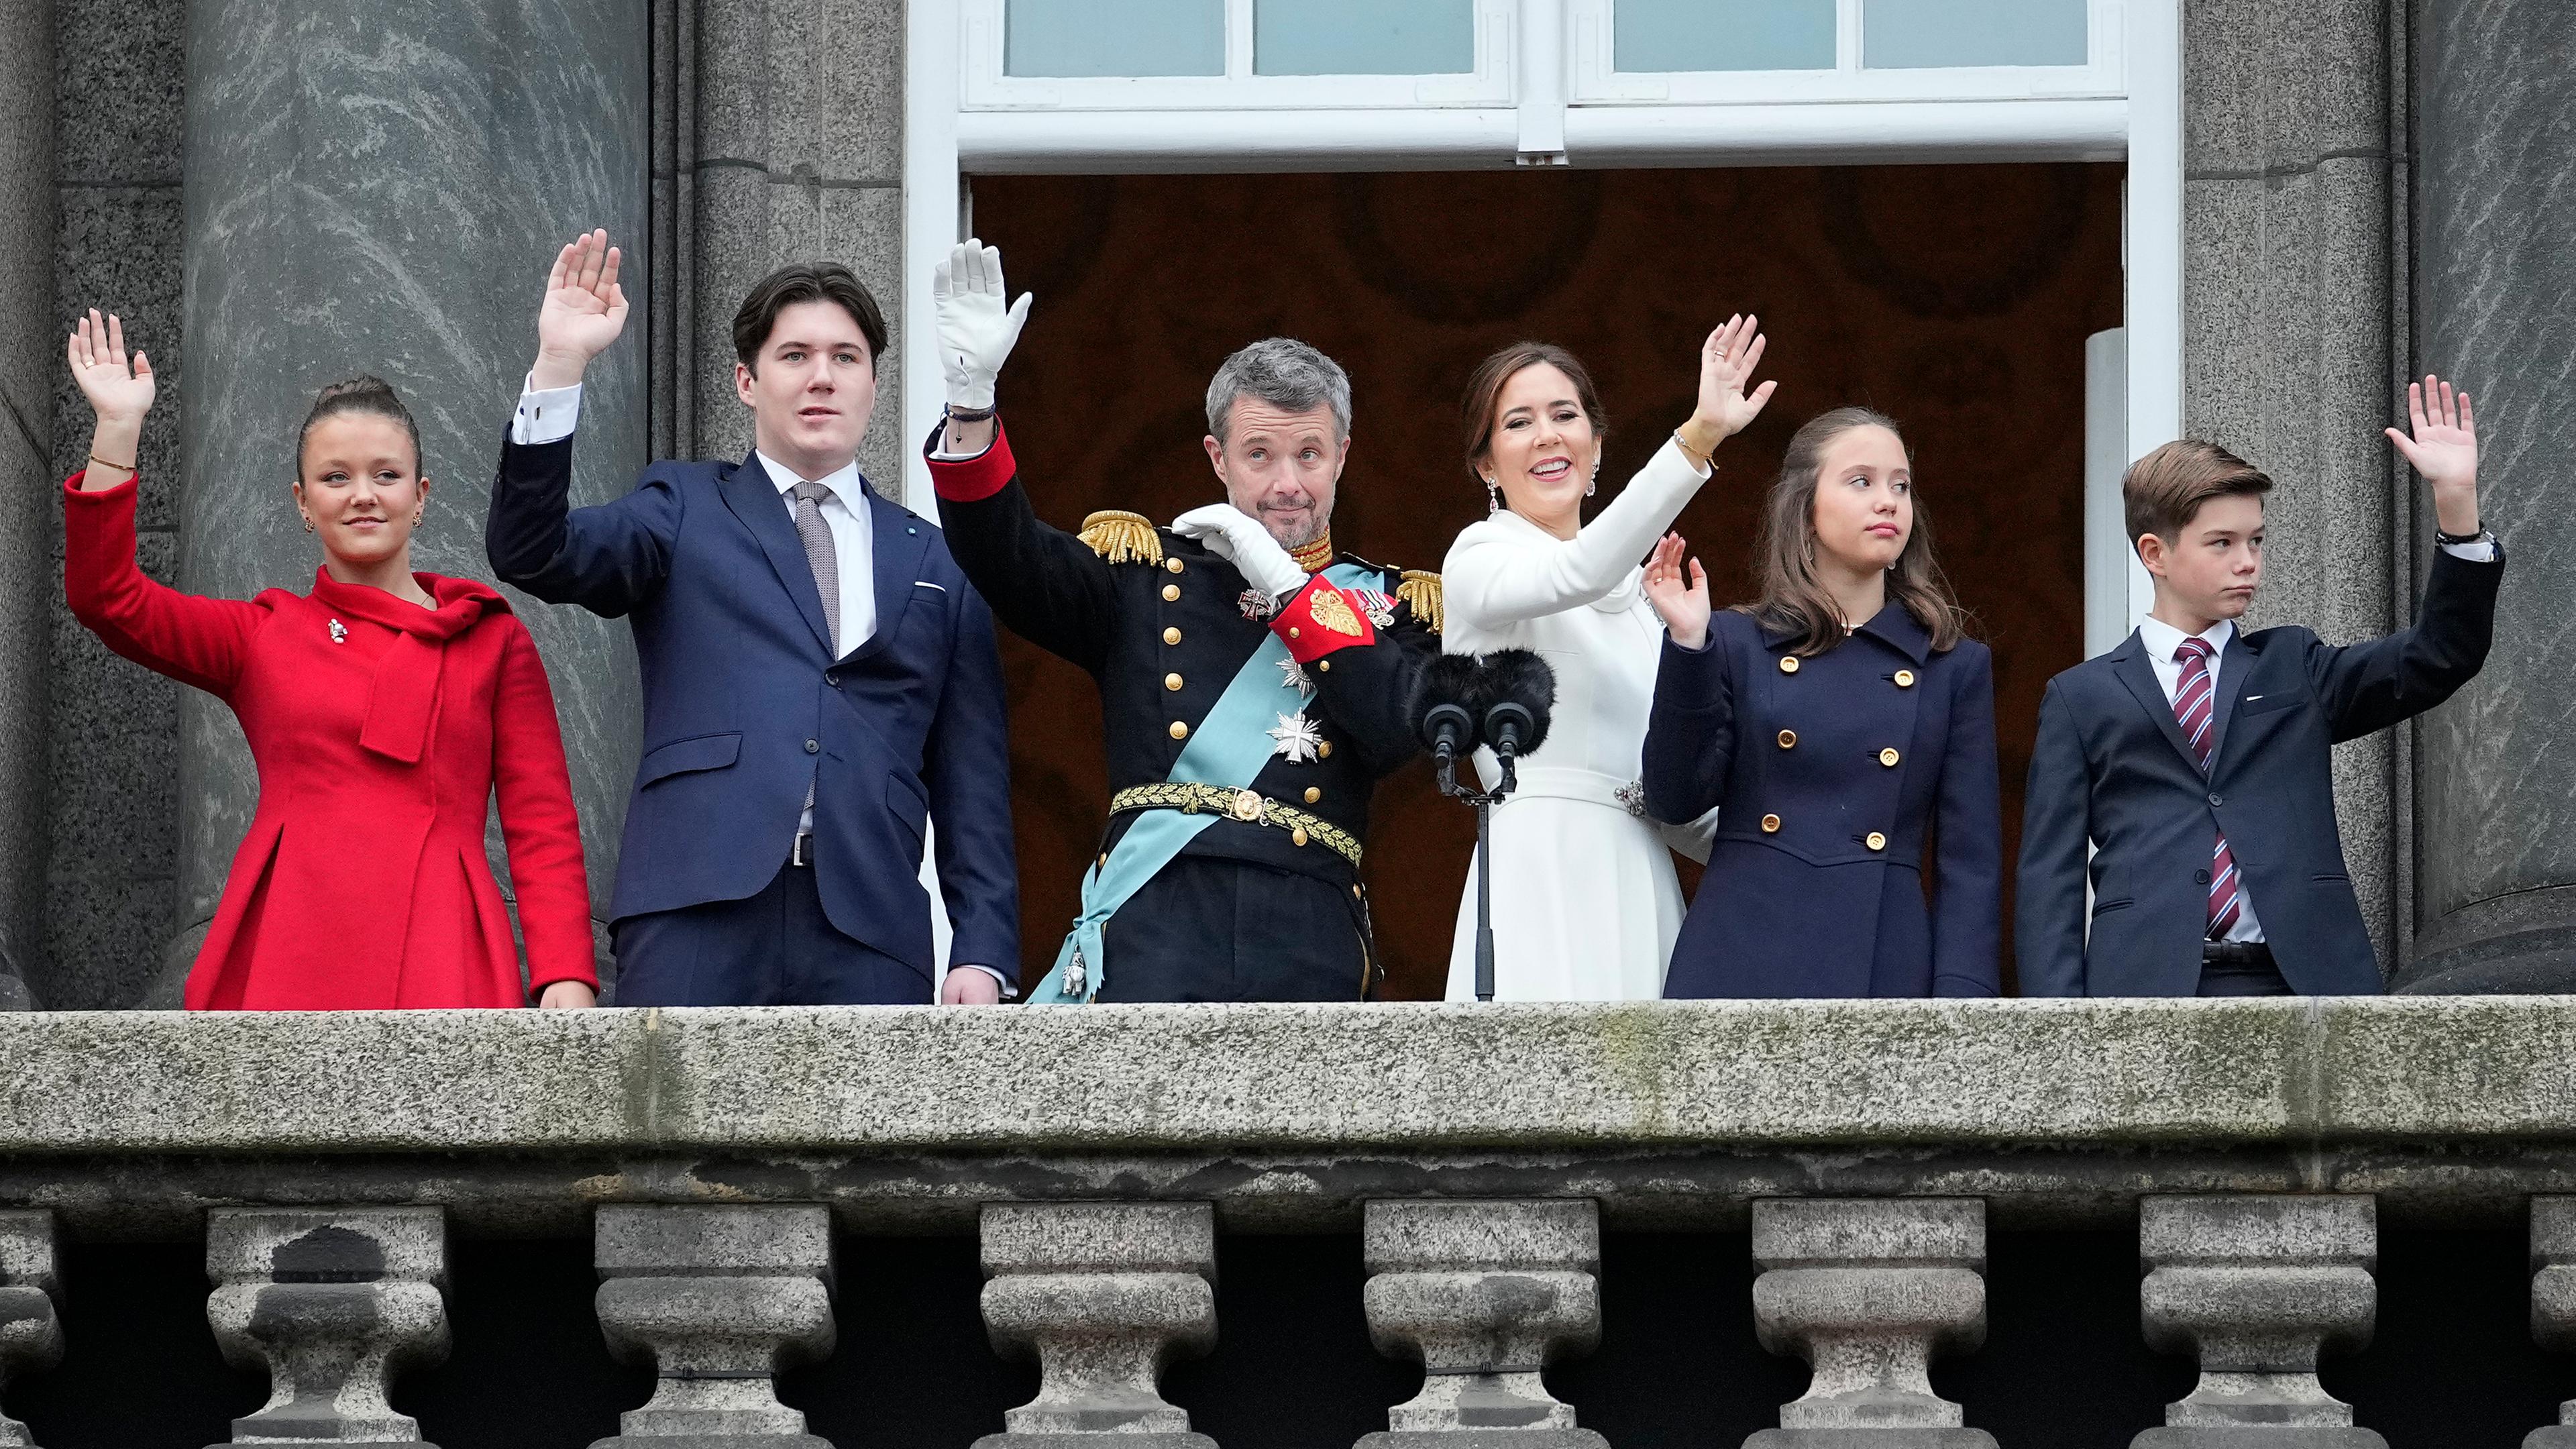 Dänmarks König Frederik X, Königin Mary zusammen mit ihren Kindern Prinzessin Josephine, Krinprinz Christian, Prinzessin Isabella und Prinz Vincent auf dem Balkon des Palastes Christiansborg in Kopenhagen.